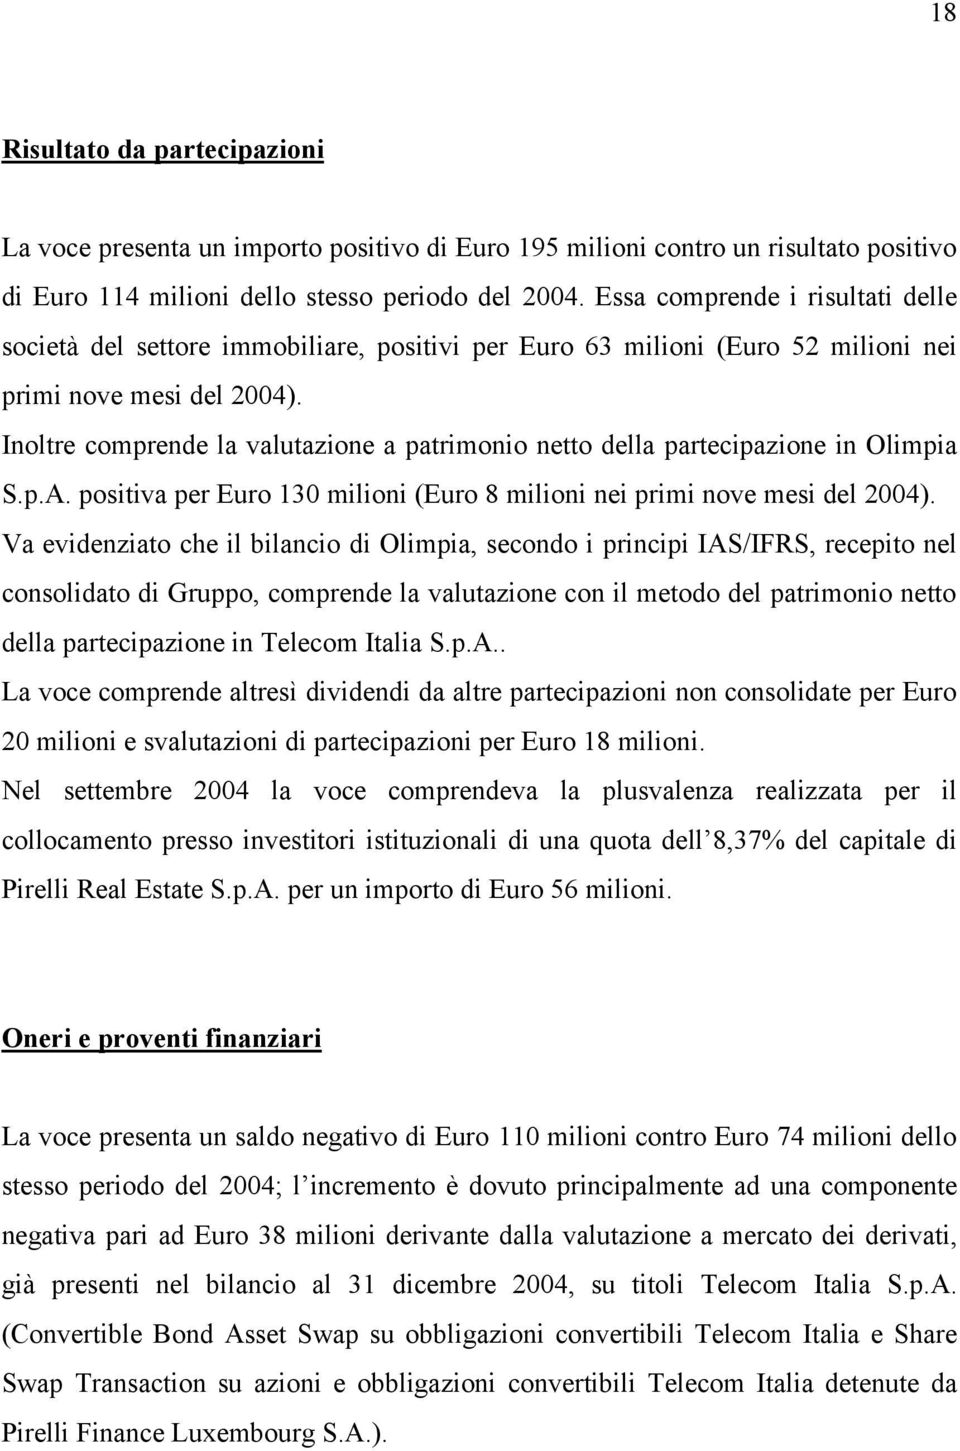 Inoltre comprende la valutazione a patrimonio netto della partecipazione in Olimpia S.p.A. positiva per Euro 130 milioni (Euro 8 milioni nei primi nove mesi del 2004).